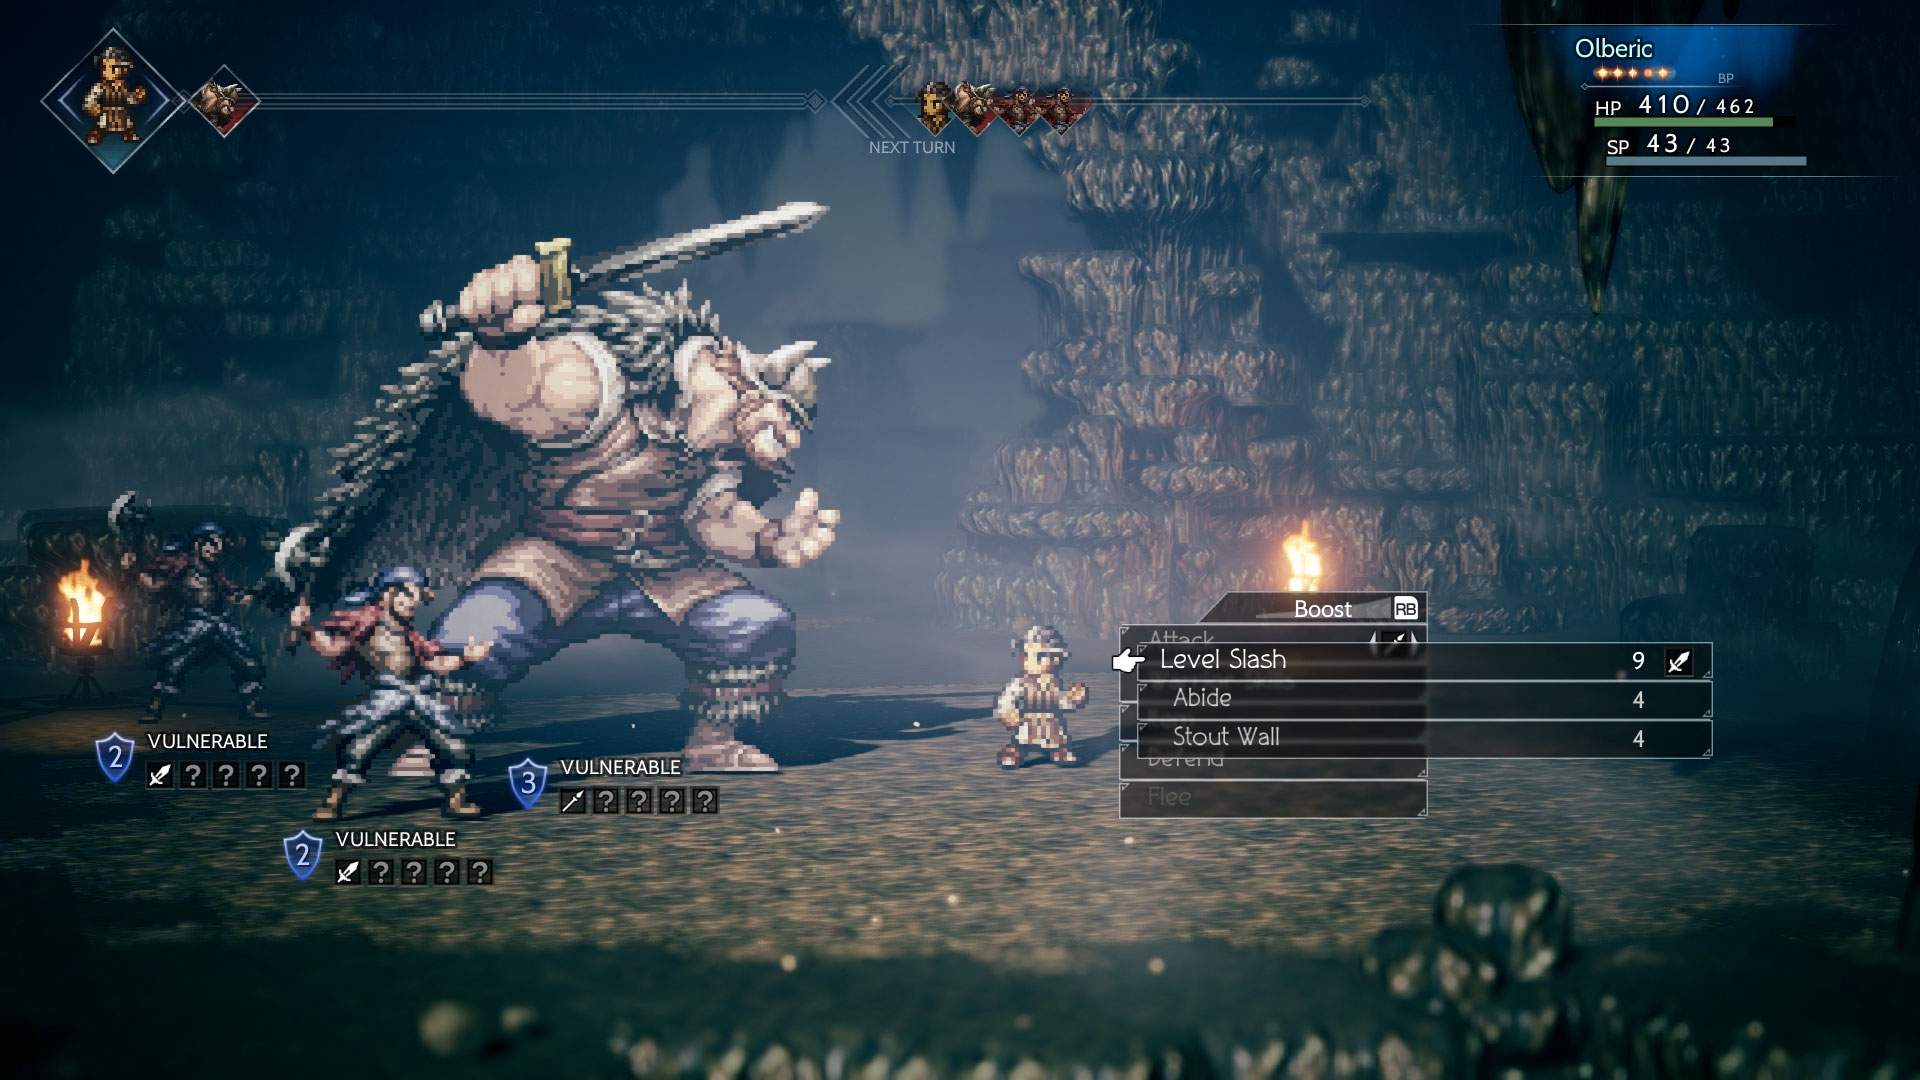 Captura de tela do combate: Olberic lutando contra três inimigos em combate por turnos em uma masmorra sinistra.